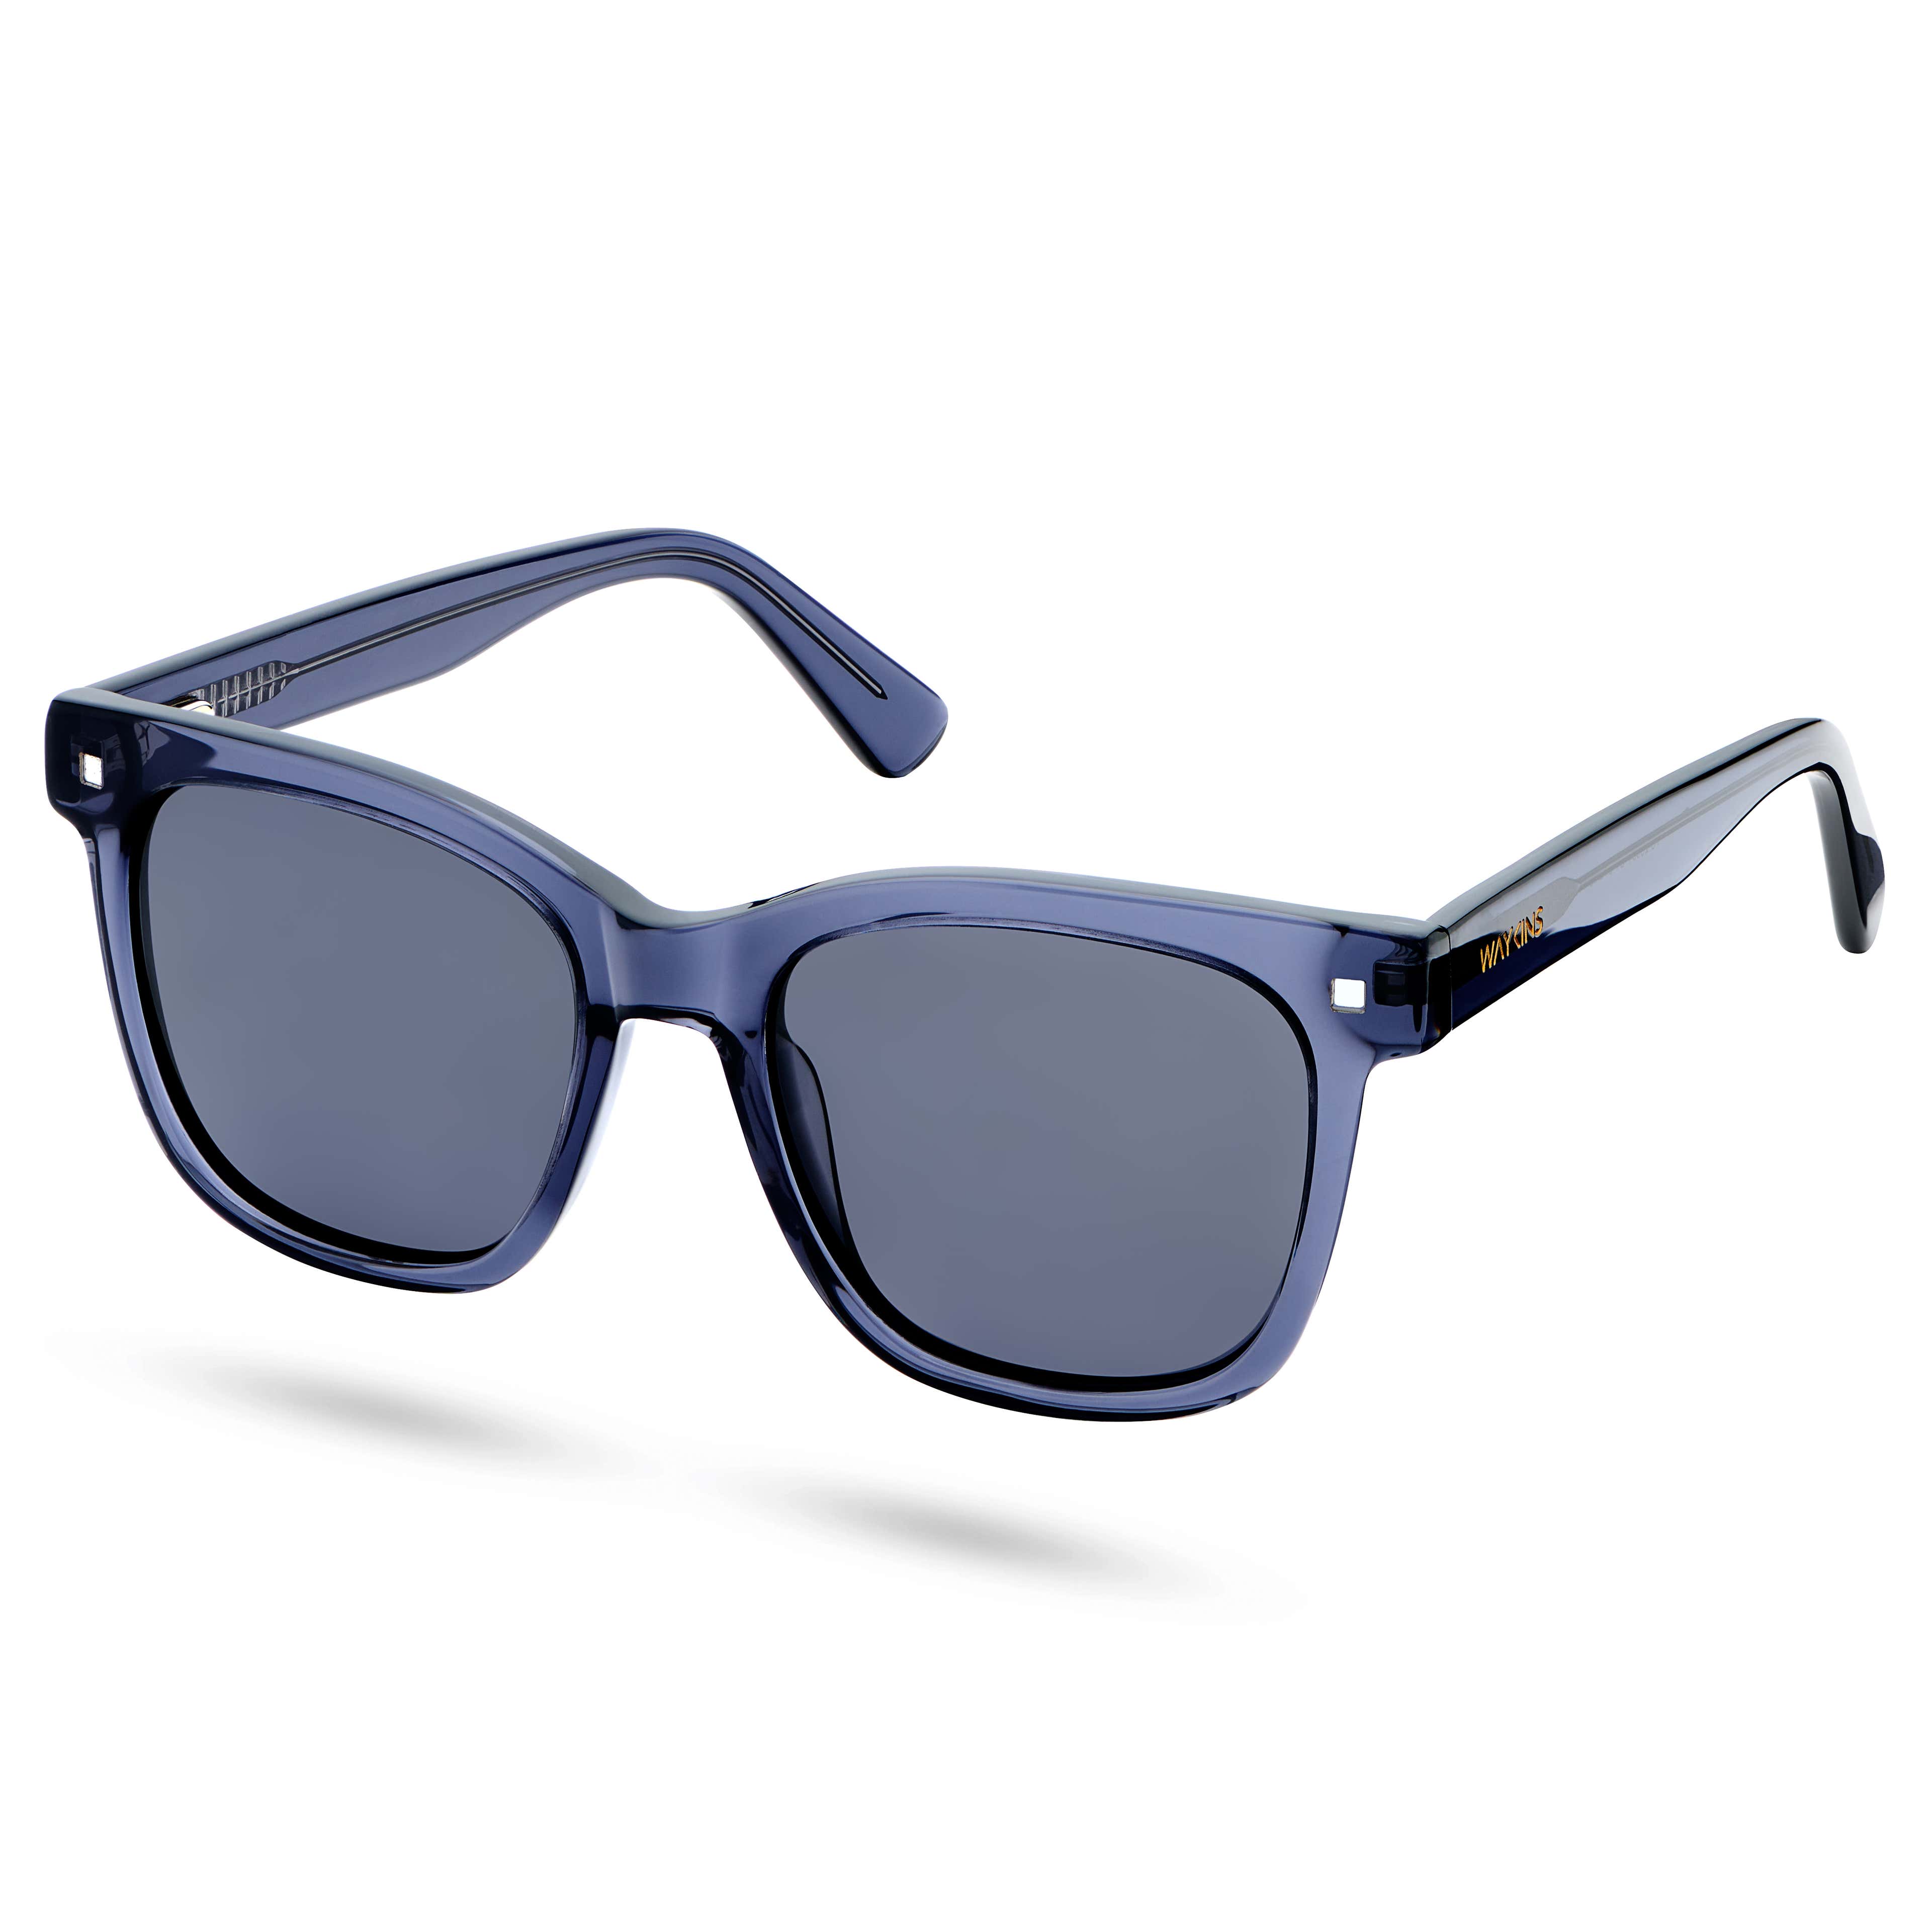 Halbtransparente, blau polarisierte, rauchige Retro-Sonnenbrille